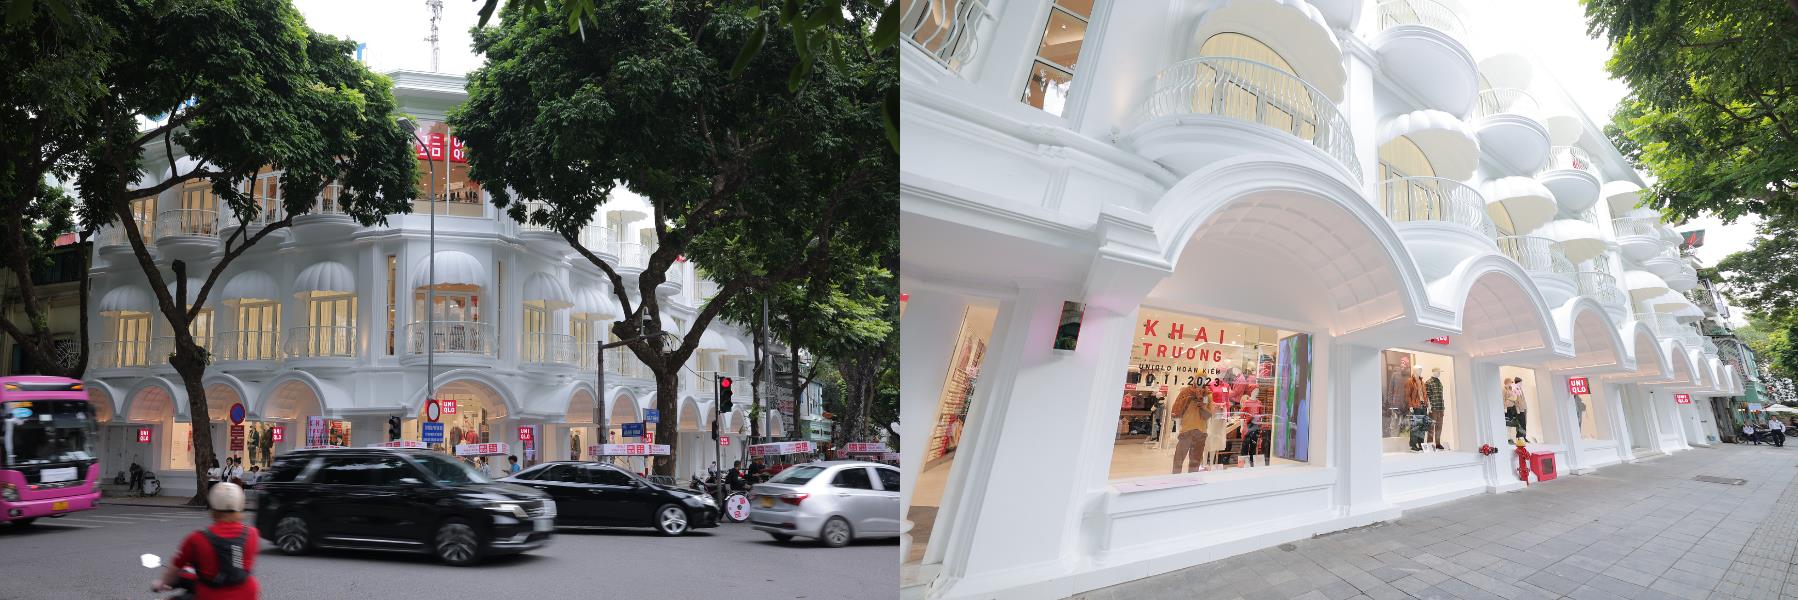 Cửa hàng UNIQLO Hoàn Kiếm trở thành địa điểm yêu thích mới của khách du lịch và người dân Thủ đô - Ảnh 1.